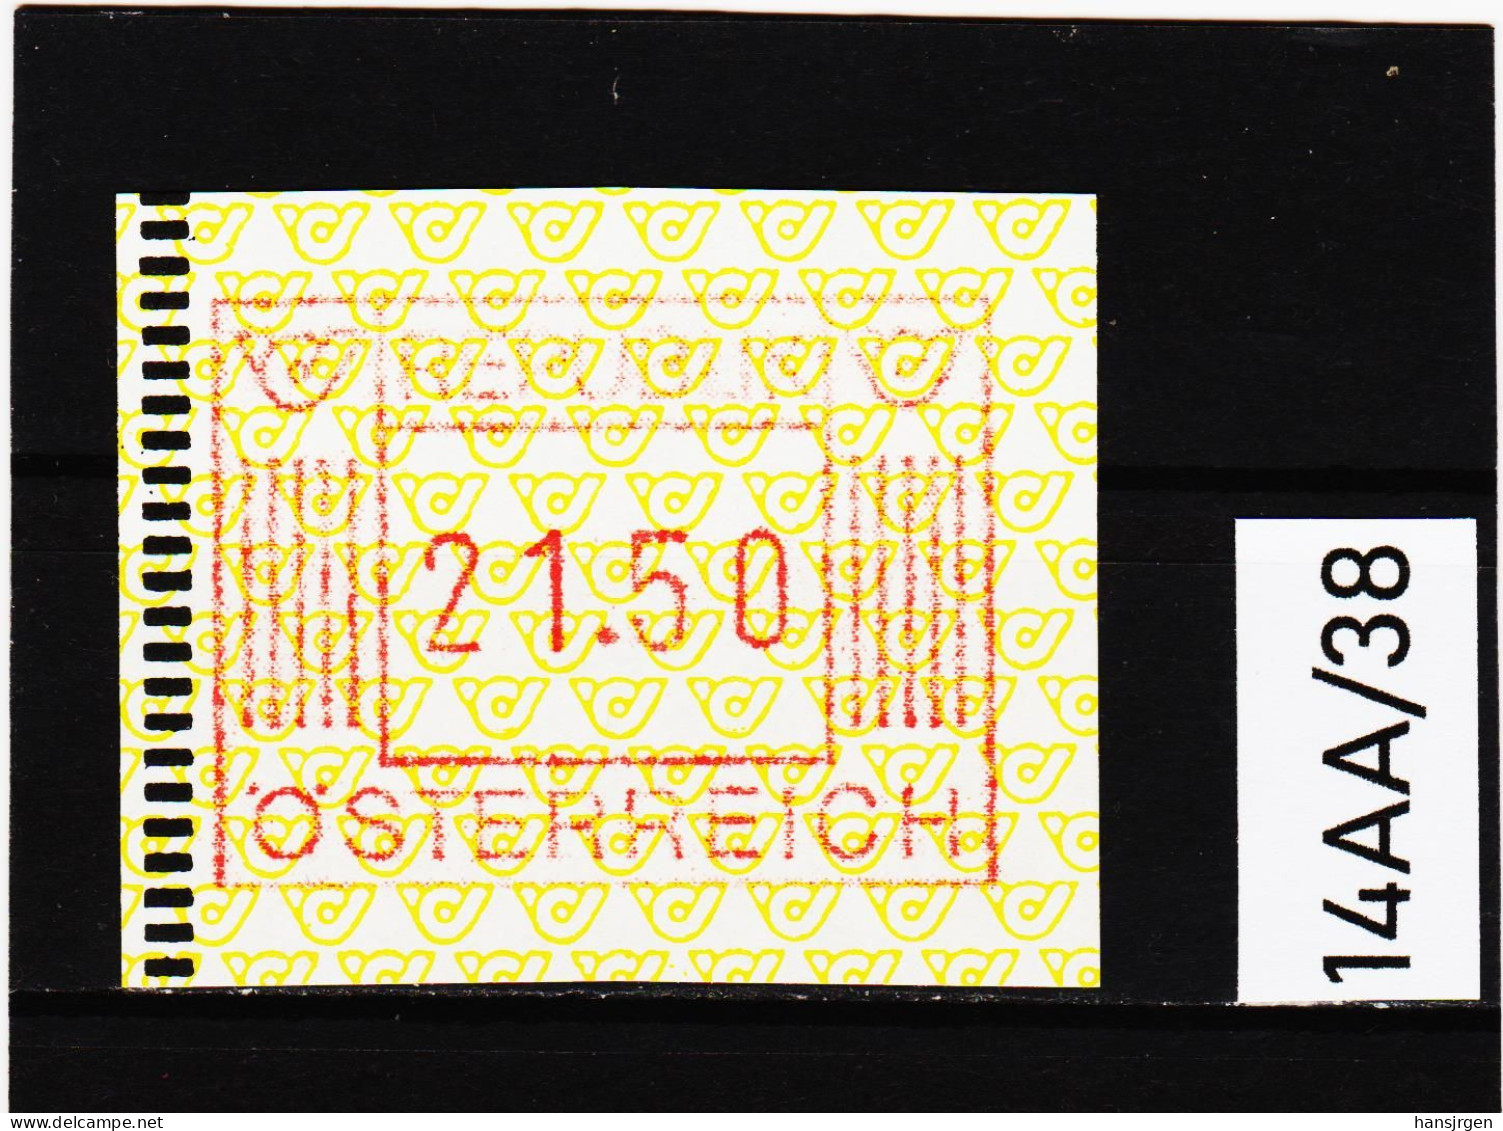 14AA/38  ÖSTERREICH 1983 AUTOMATENMARKEN 1. AUSGABE  21,50 SCHILLING   ** Postfrisch - Automatenmarken [ATM]